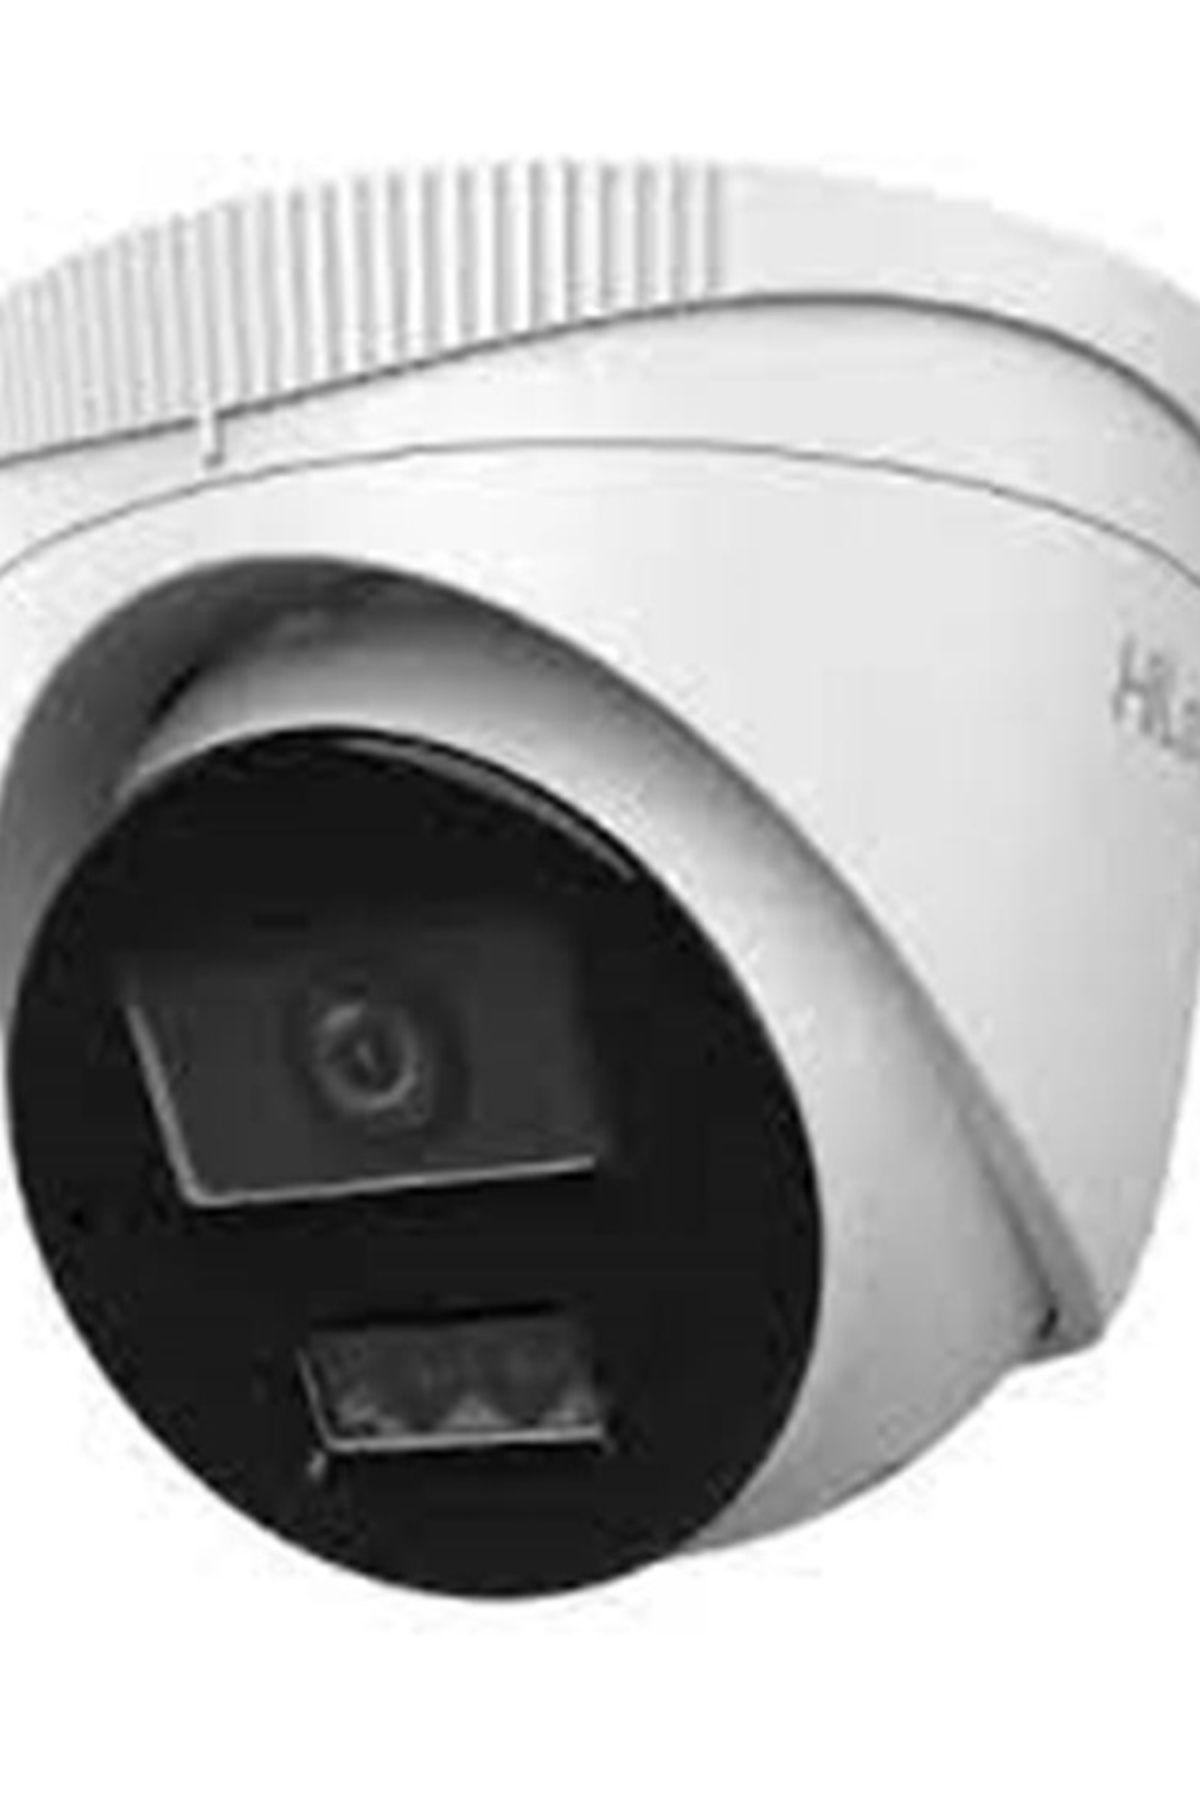 Hilook Ipc-t240ha-lu 4 Mp 2.8mm Dual Light Md 2.0 Ip Dome Kamera